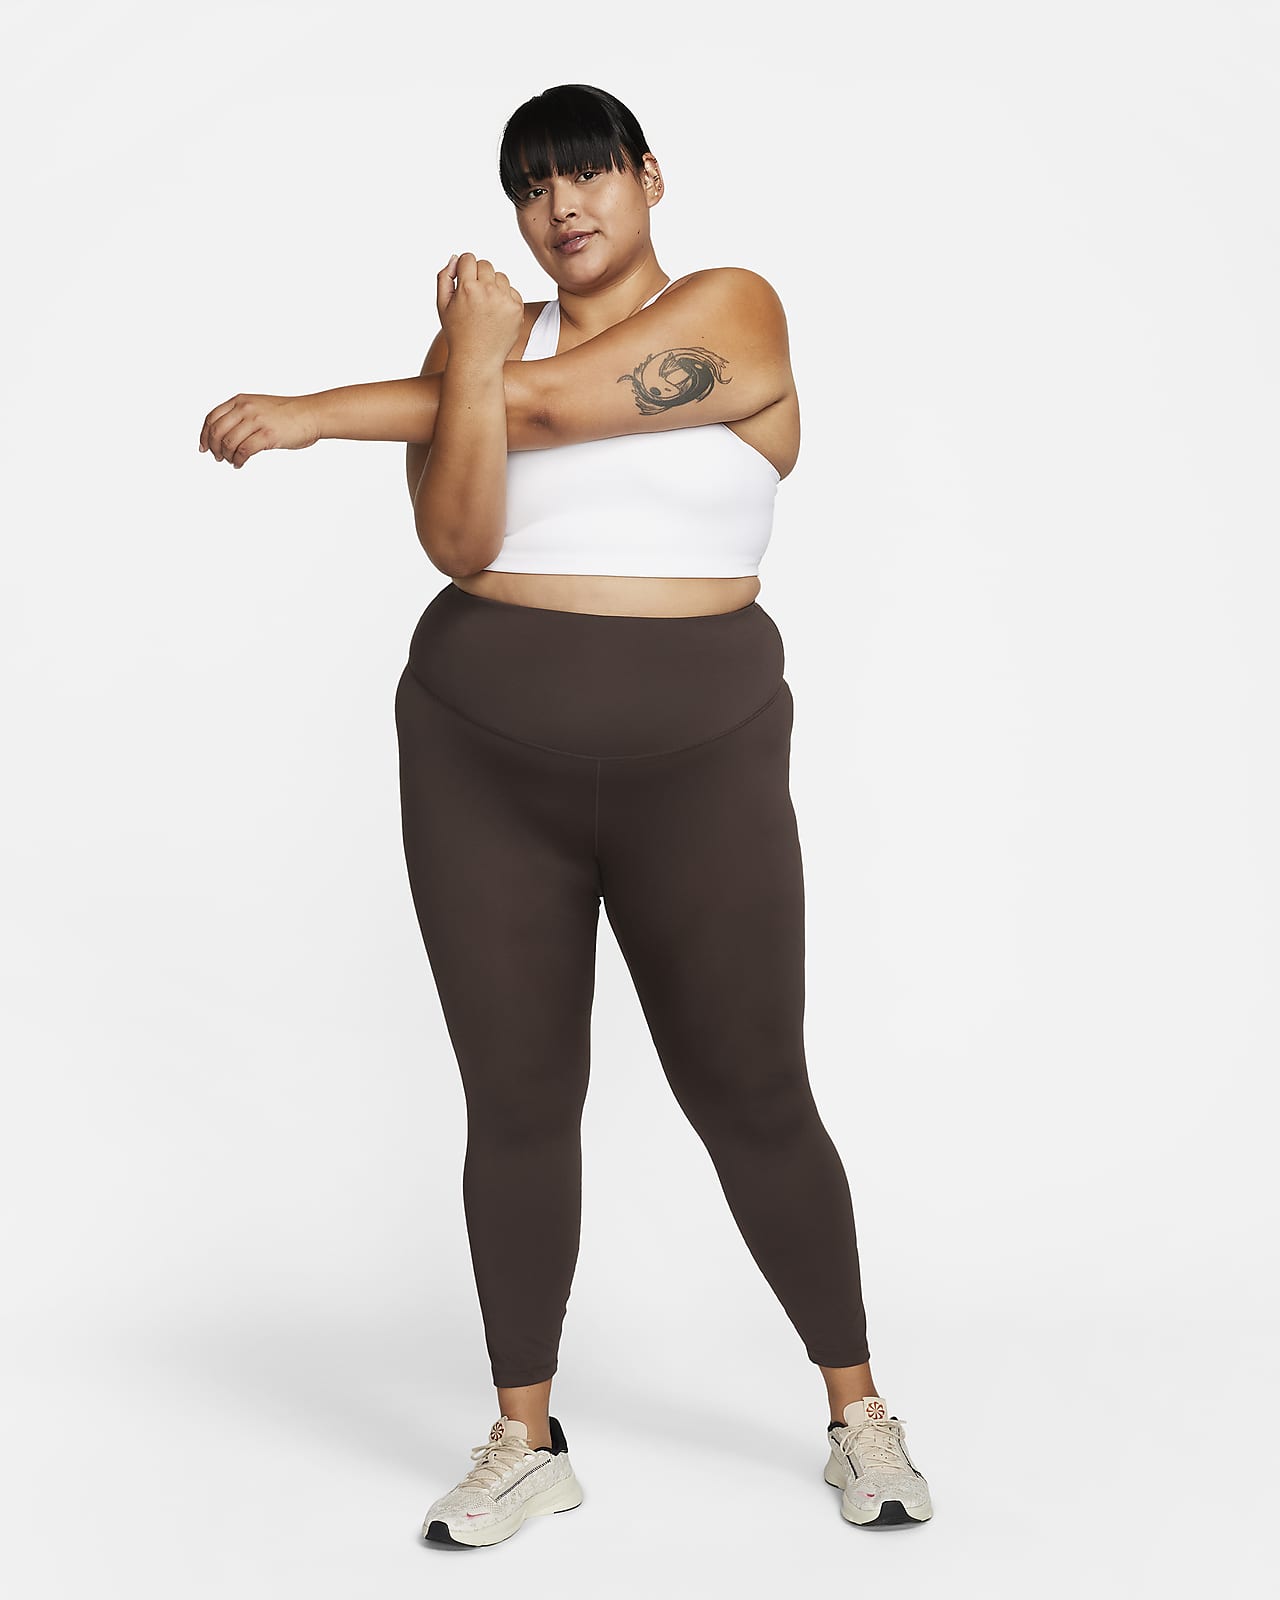 O nosso Guia das melhores leggings para mulher. Nike PT